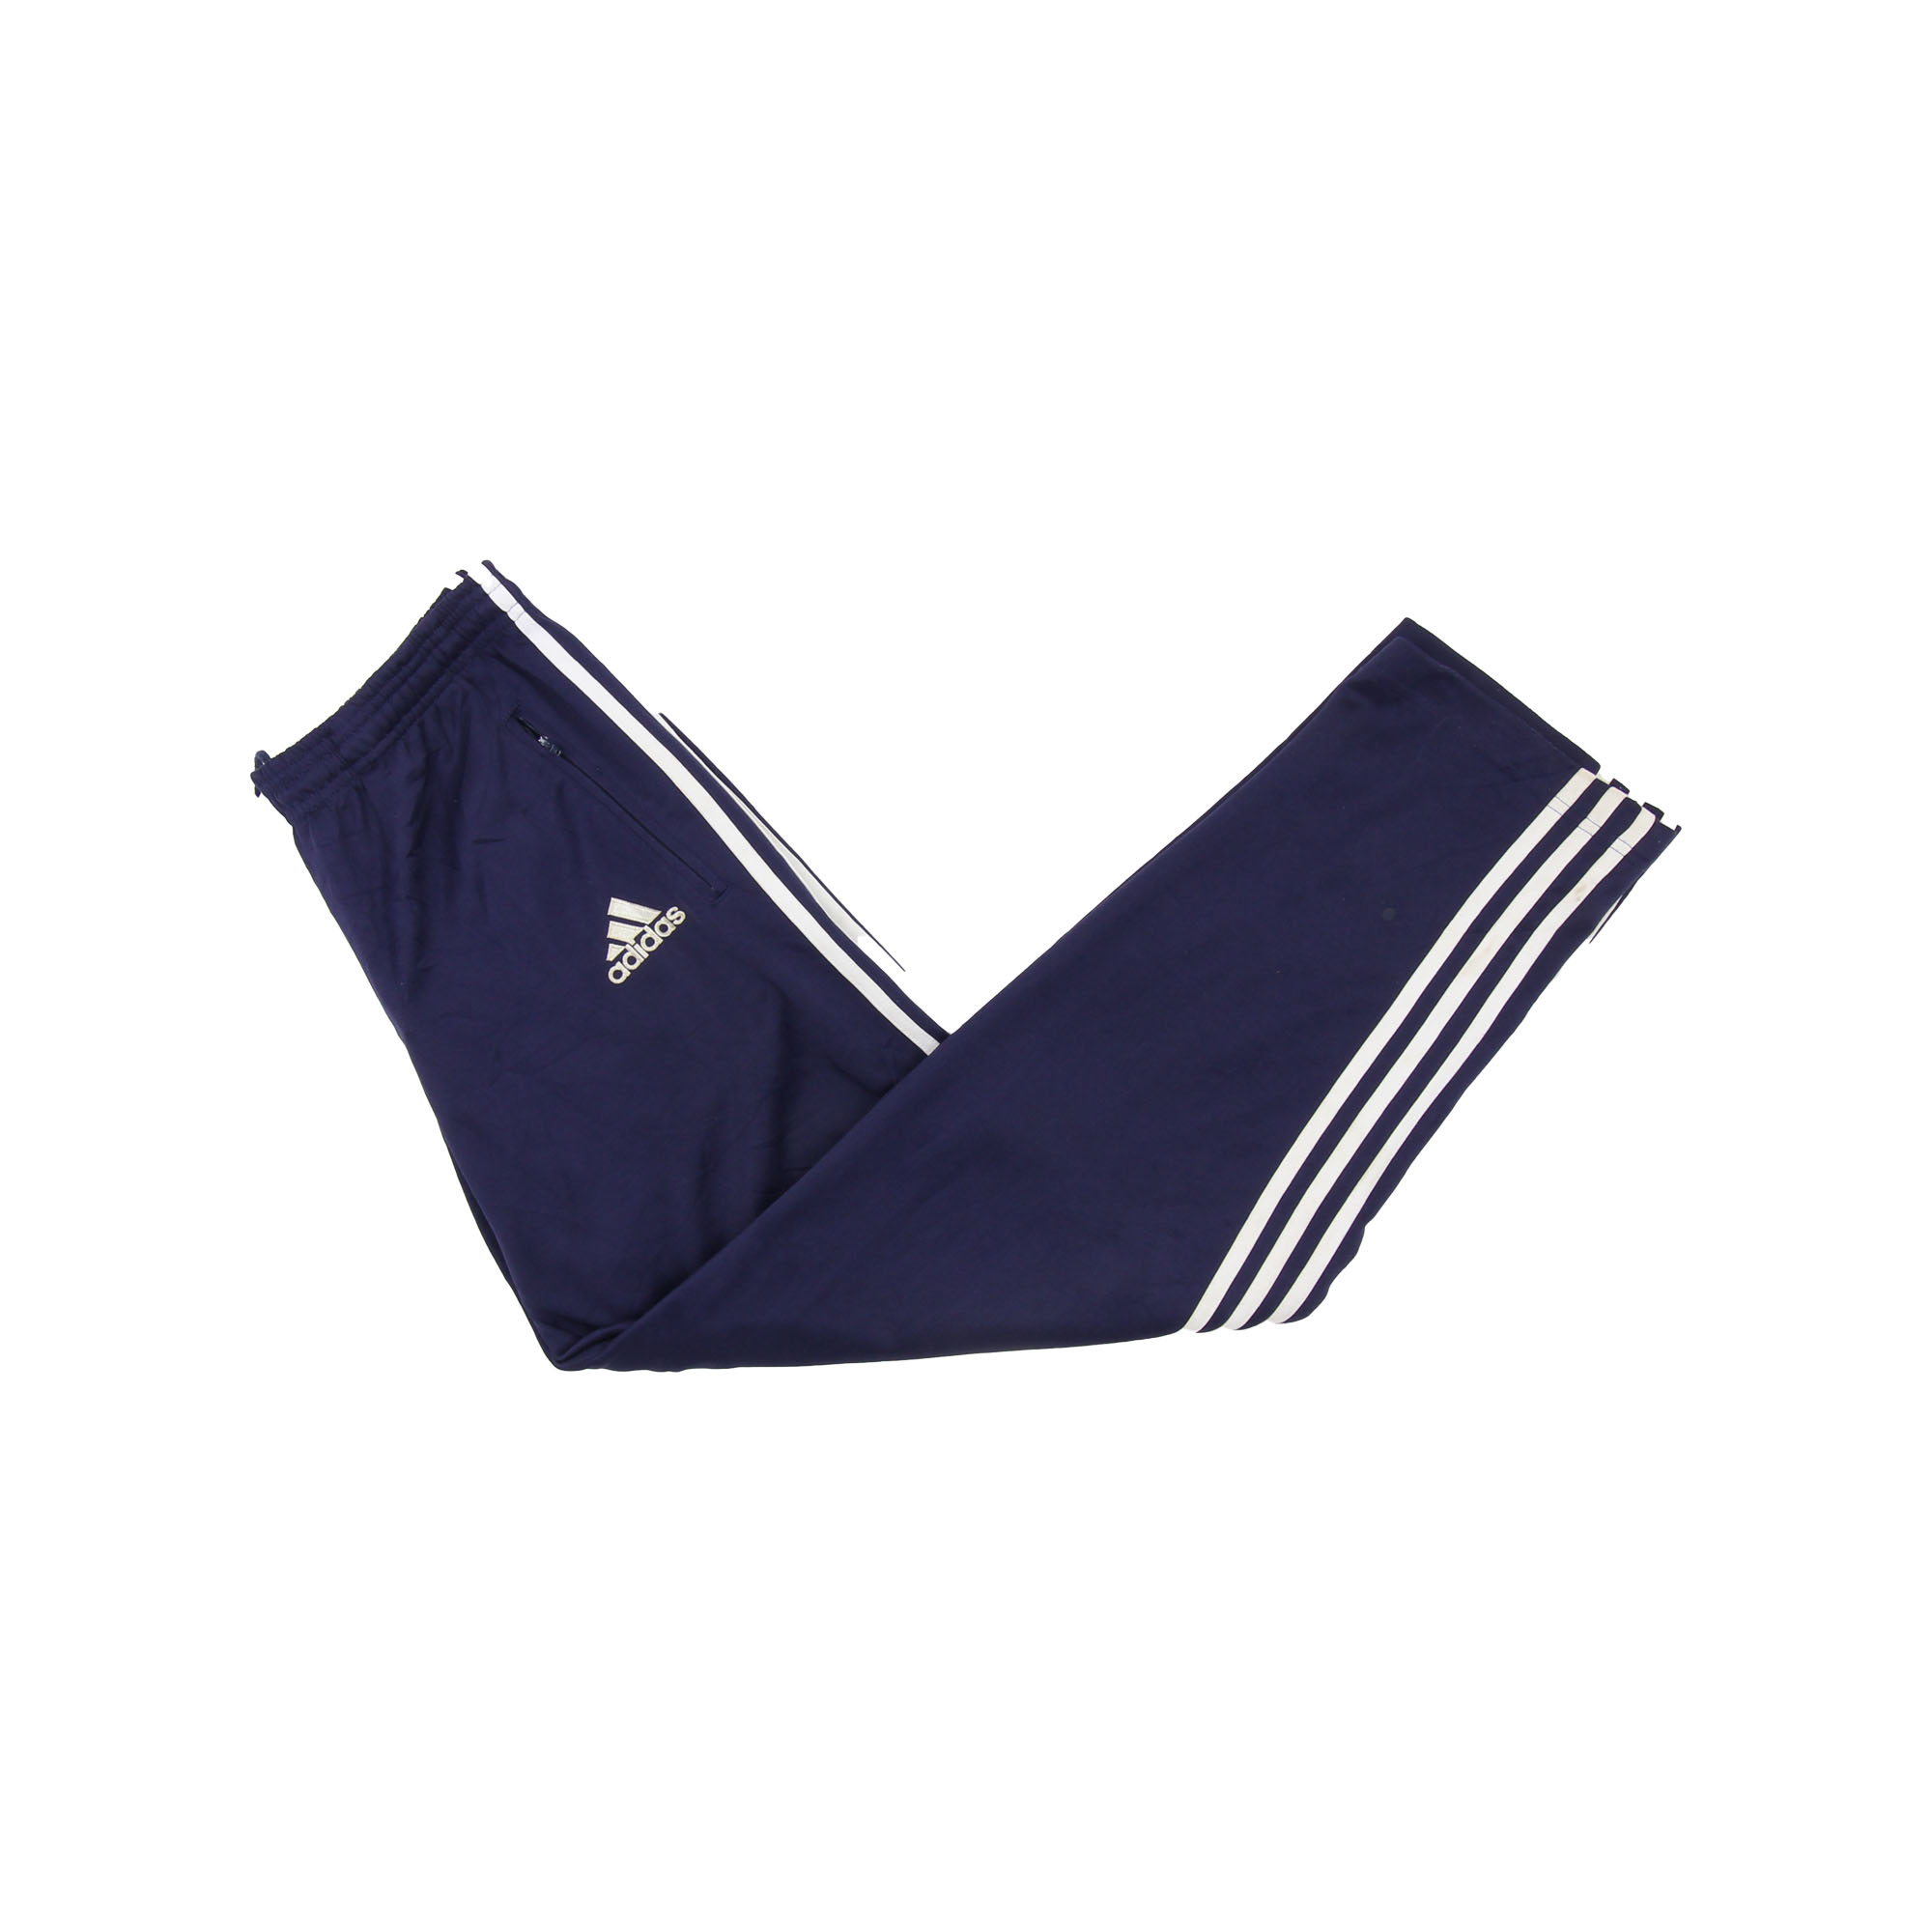 Adidas Sweatpants Blue -  L